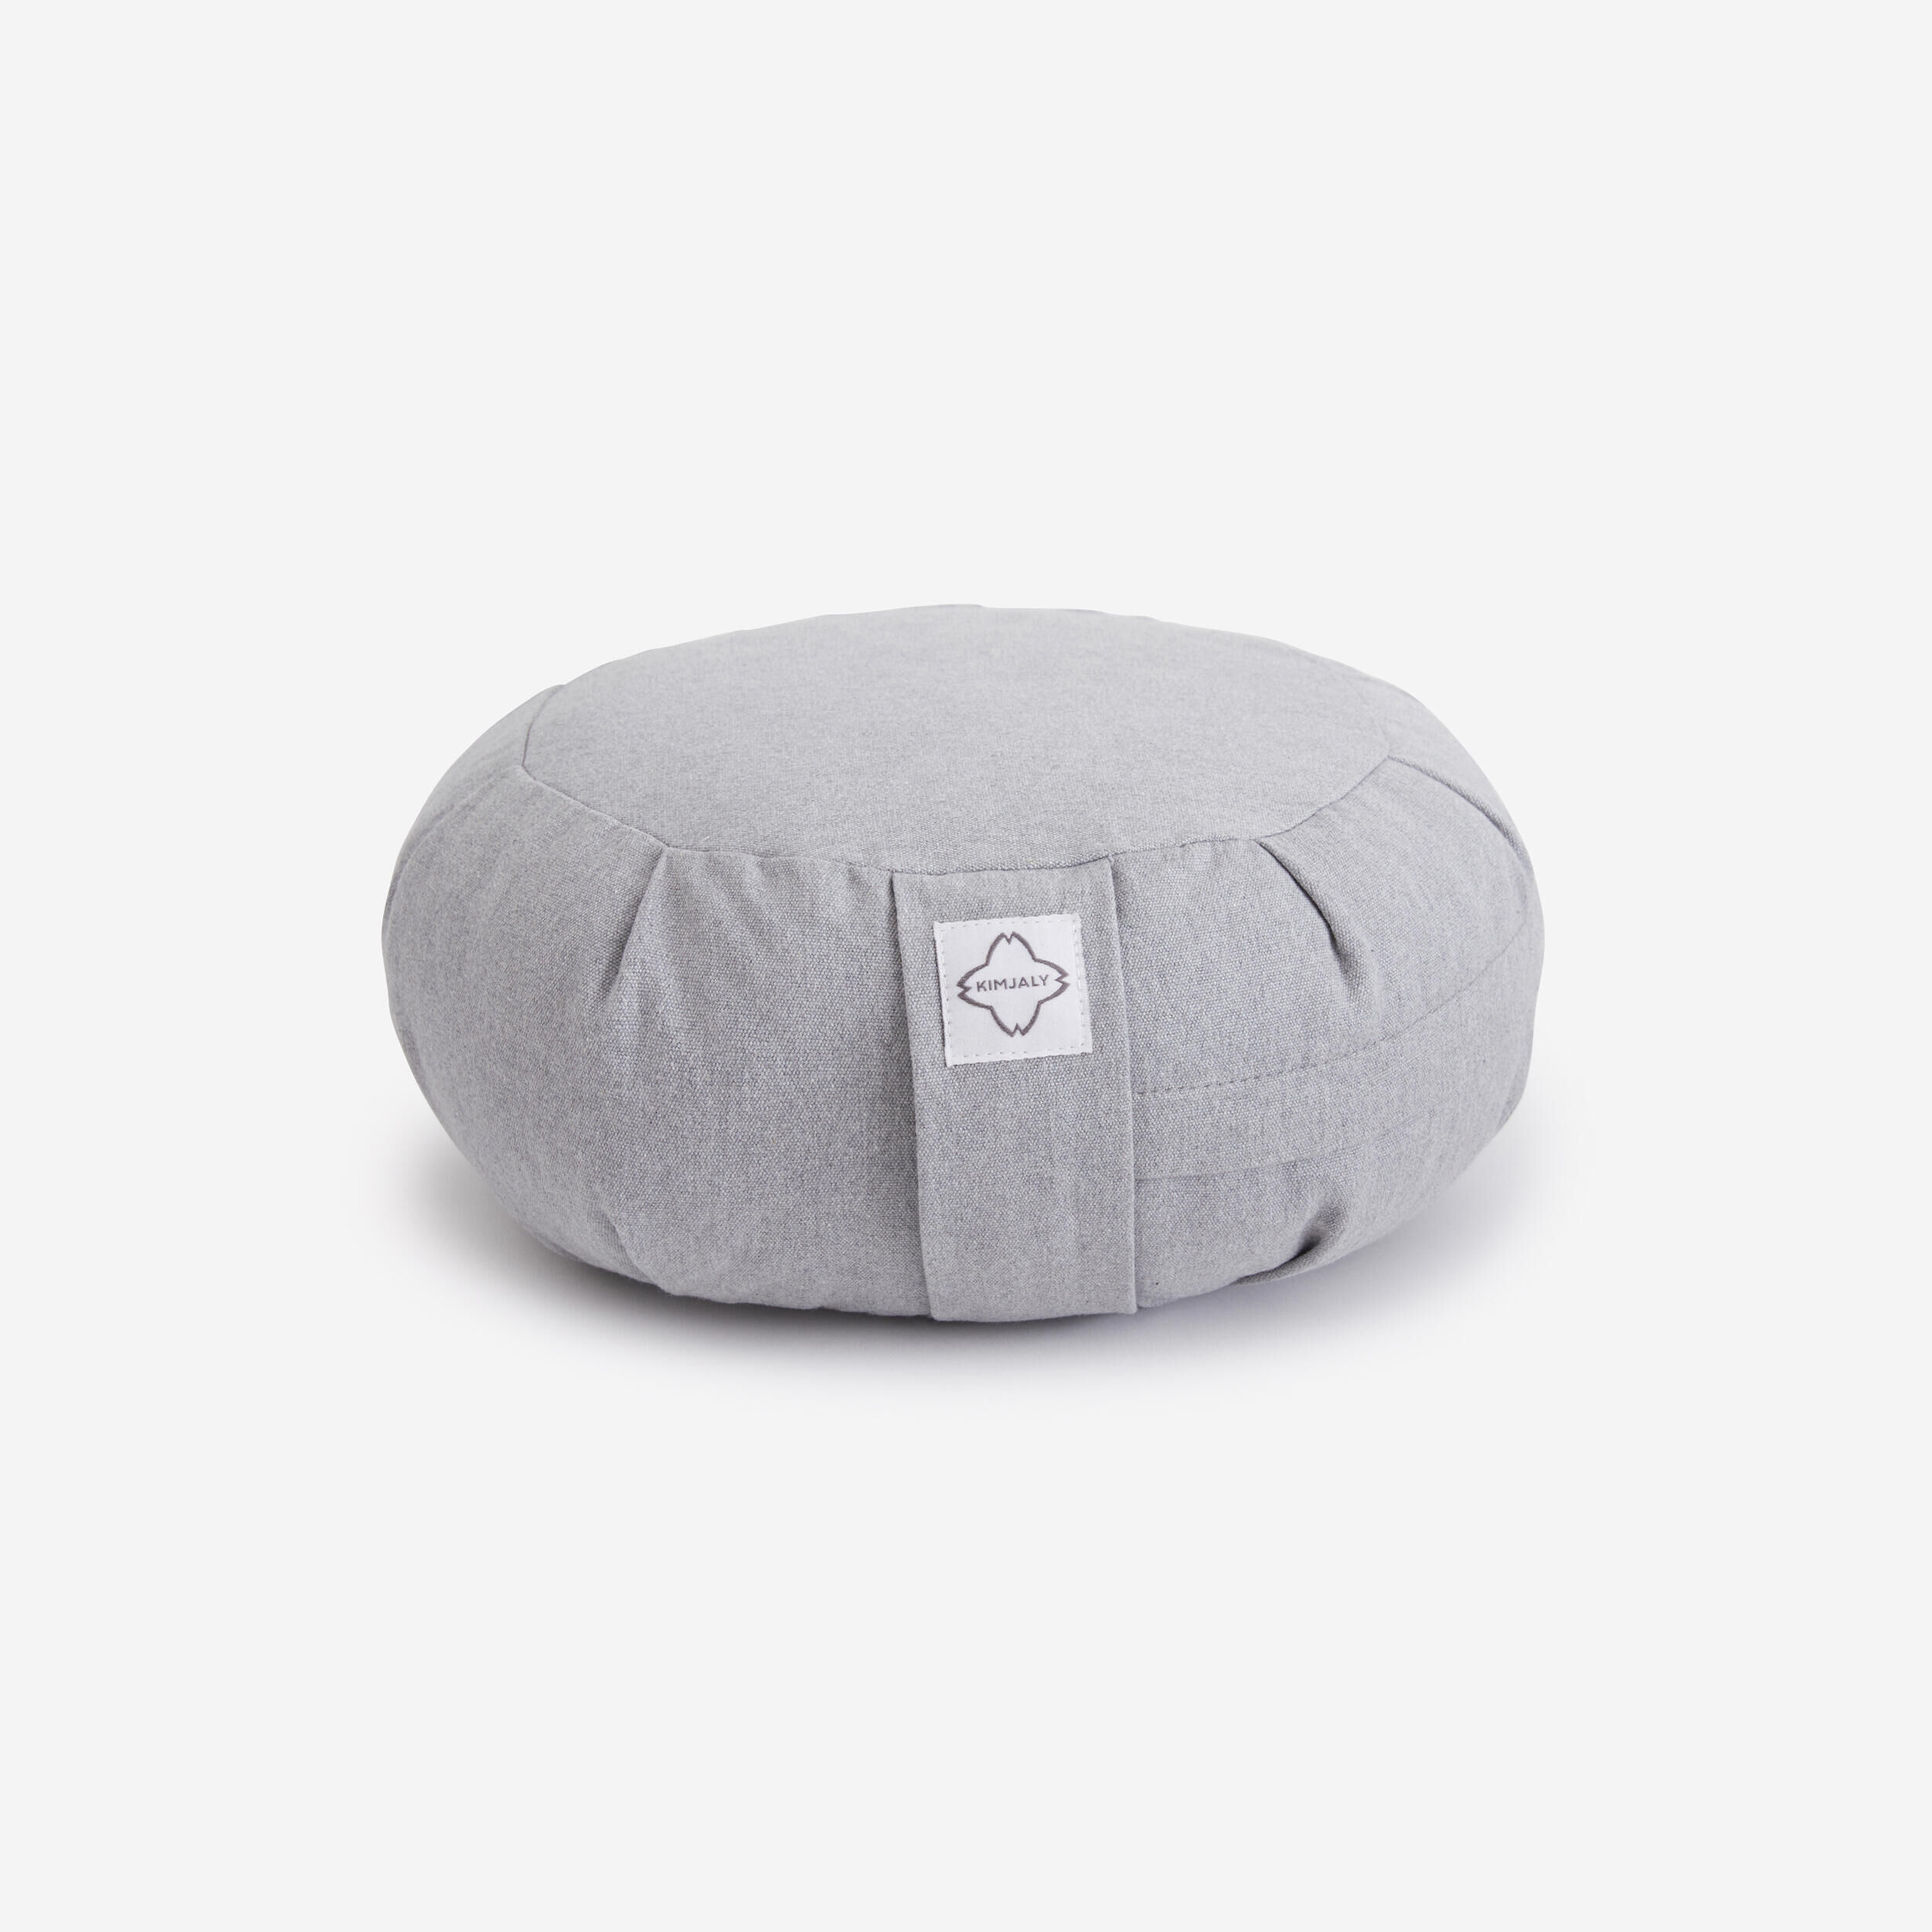 KIMJALY Yoga & Meditation Zafu Cushion - Mottled Grey